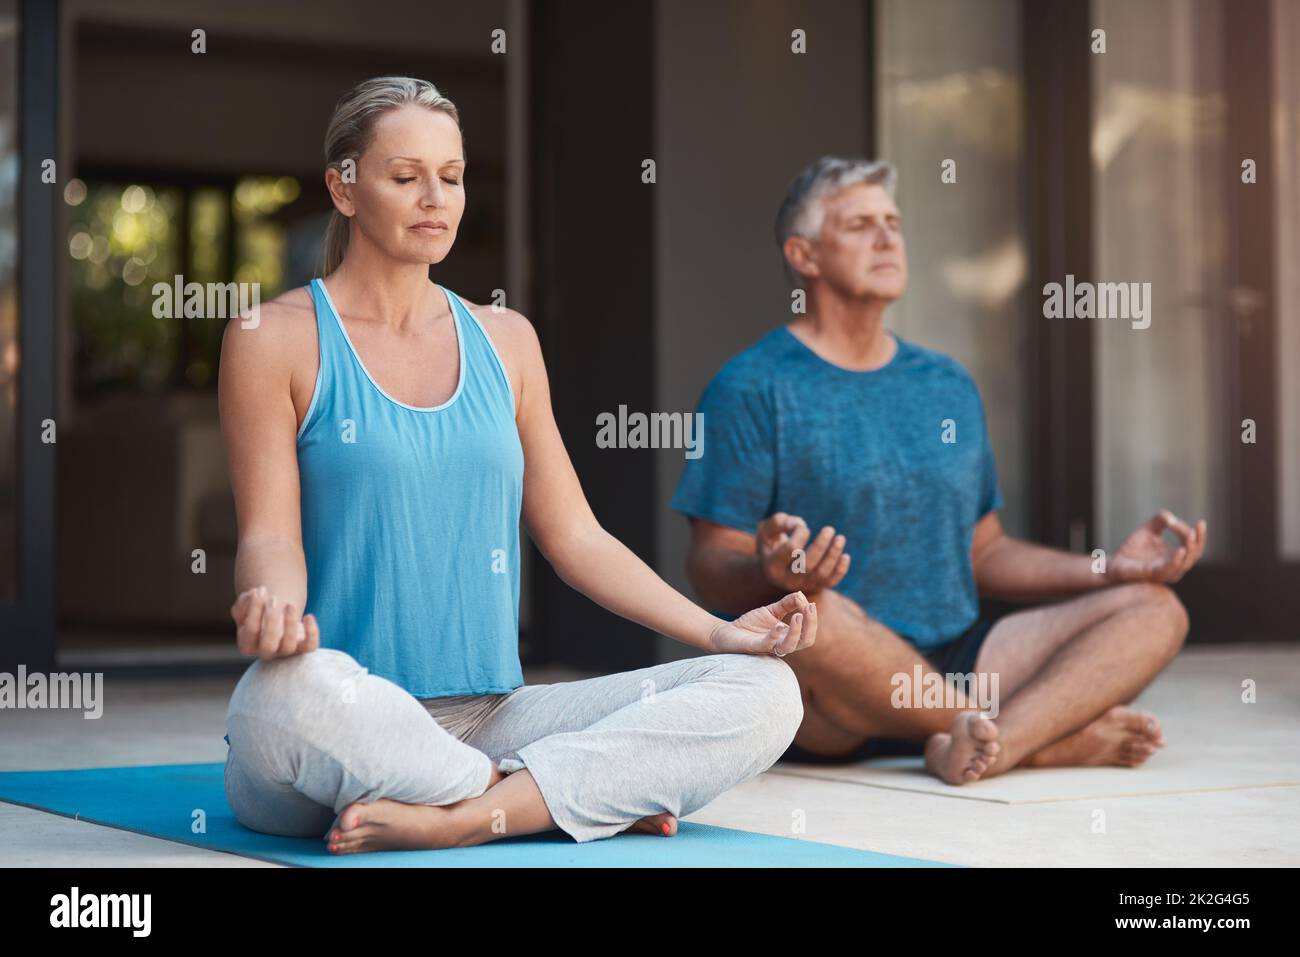 La paix entre en jeu. Photo d'un couple mûr s'engageant calmement dans une posture de yoga avec leurs jambes croisées. Banque D'Images